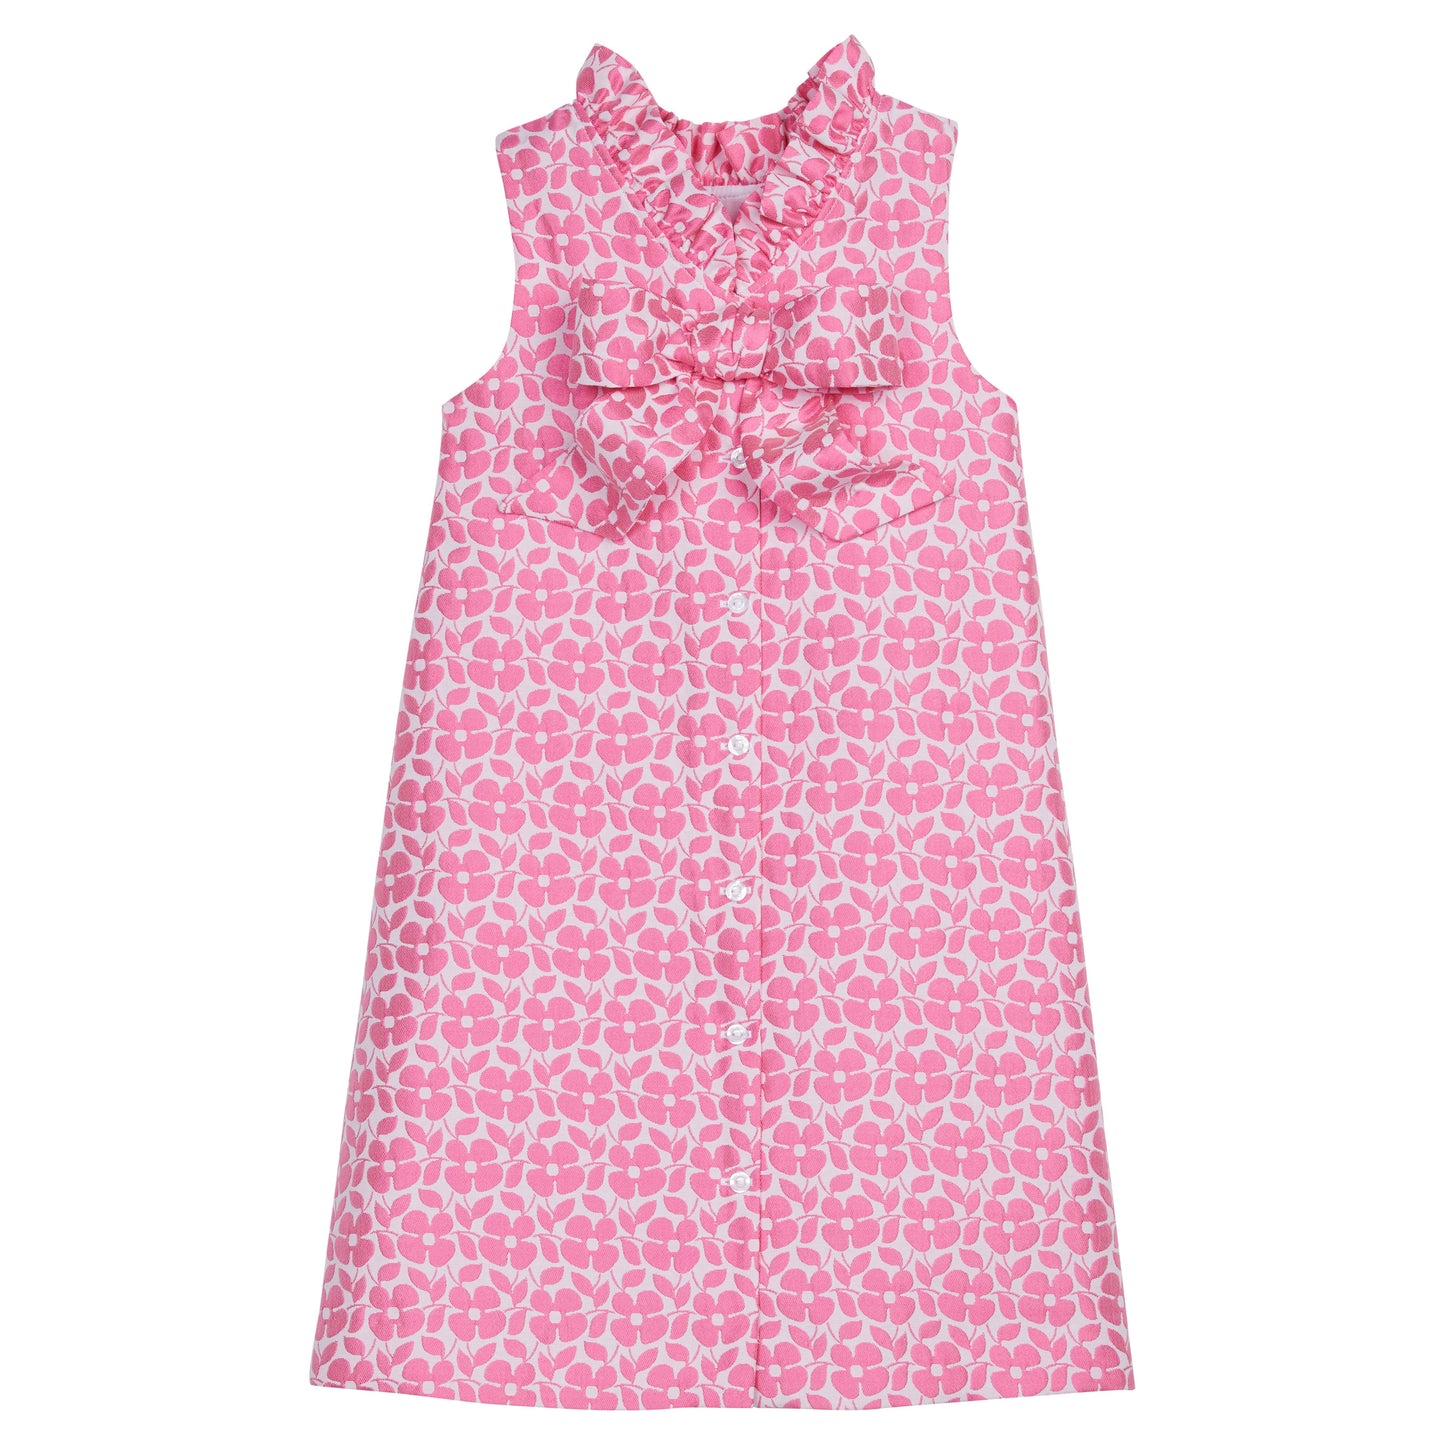 Little English Elizabeth Dress - Pink Floral Jacquard